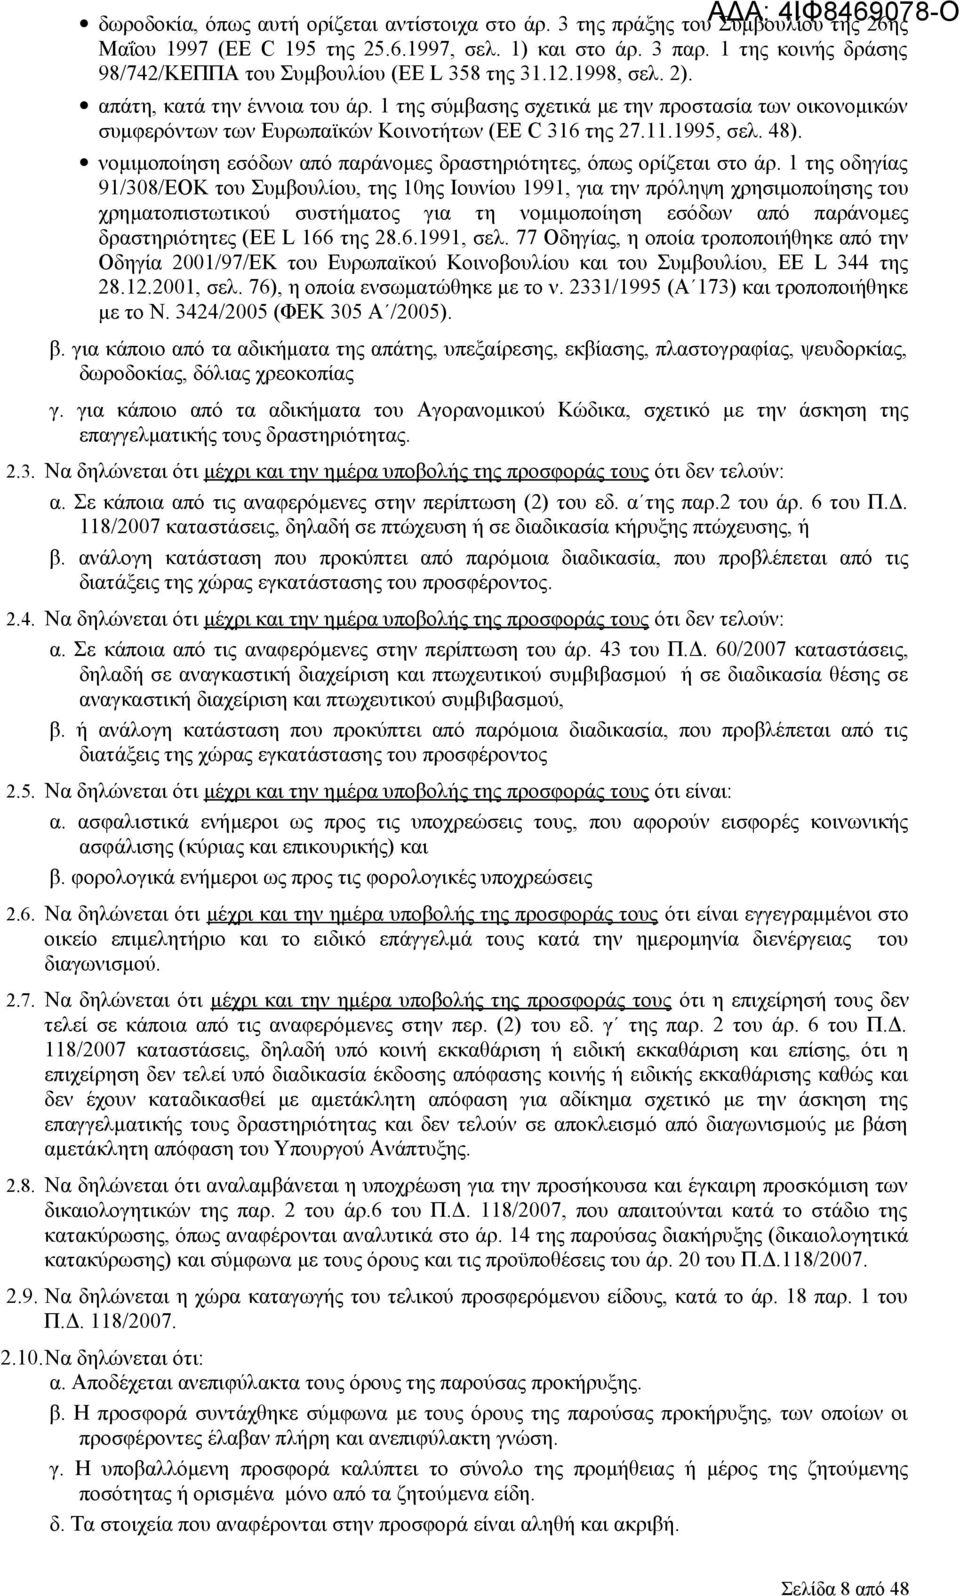 1 της σύμβασης σχετικά με την προστασία των οικονομικών συμφερόντων των Ευρωπαϊκών Κοινοτήτων (EE C 316 της 27.11.1995, σελ. 48).